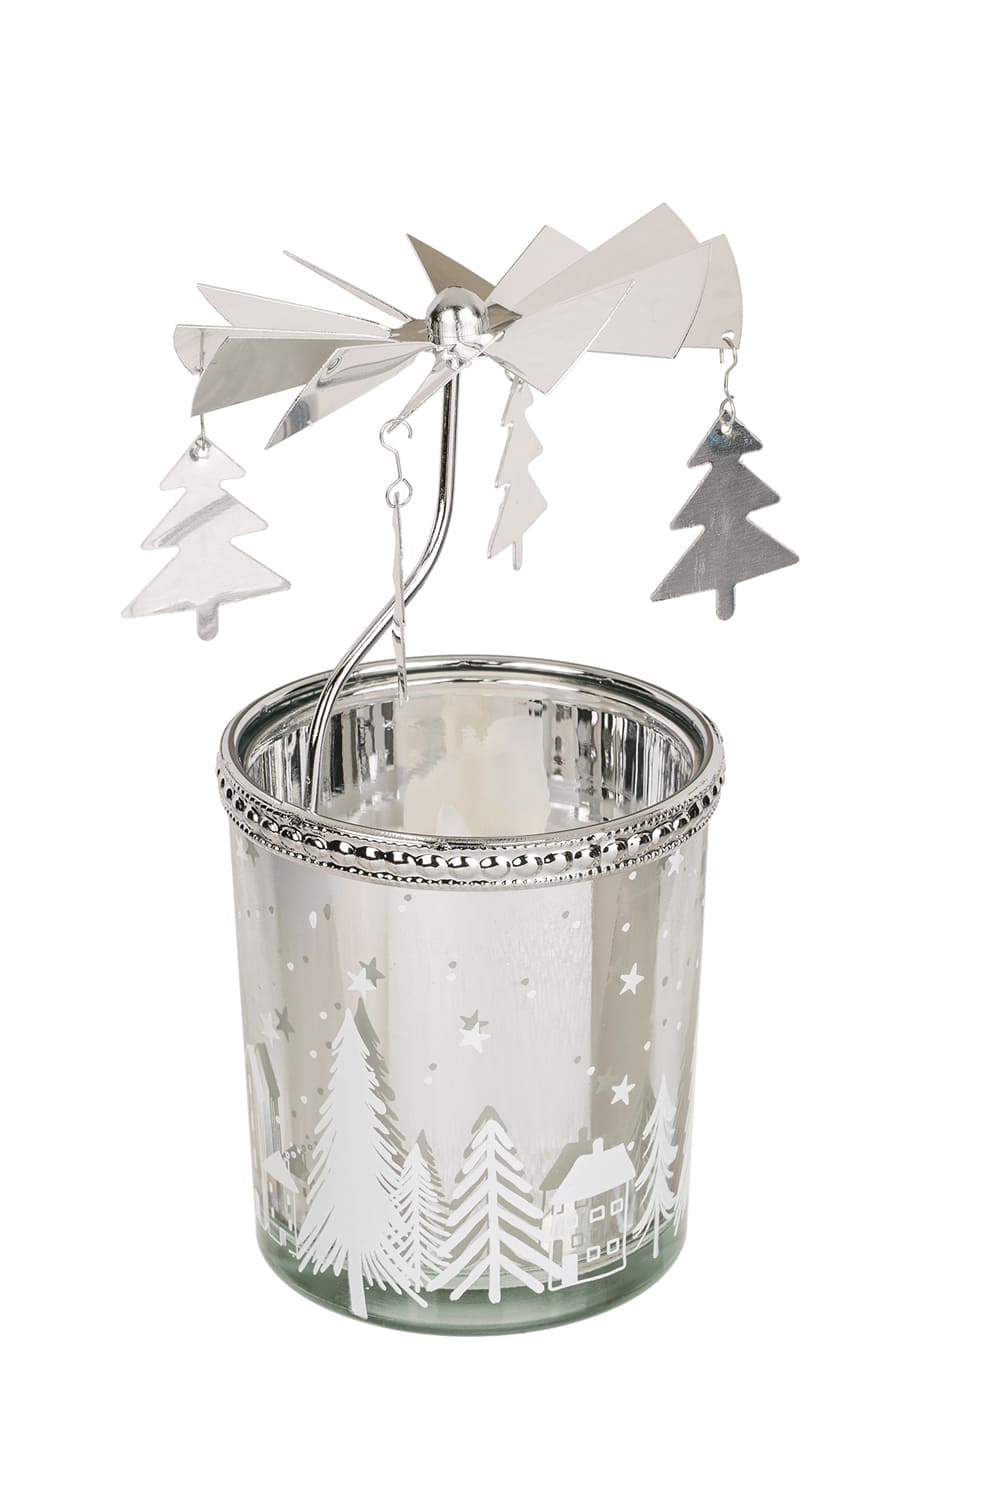 Dieses Teelicht-Karussell ist nicht nur ein dekoratives Teelicht, sondern ein aussergewoehnliches Drehspiel. Kerze mit Motiv: Tannenbaum.